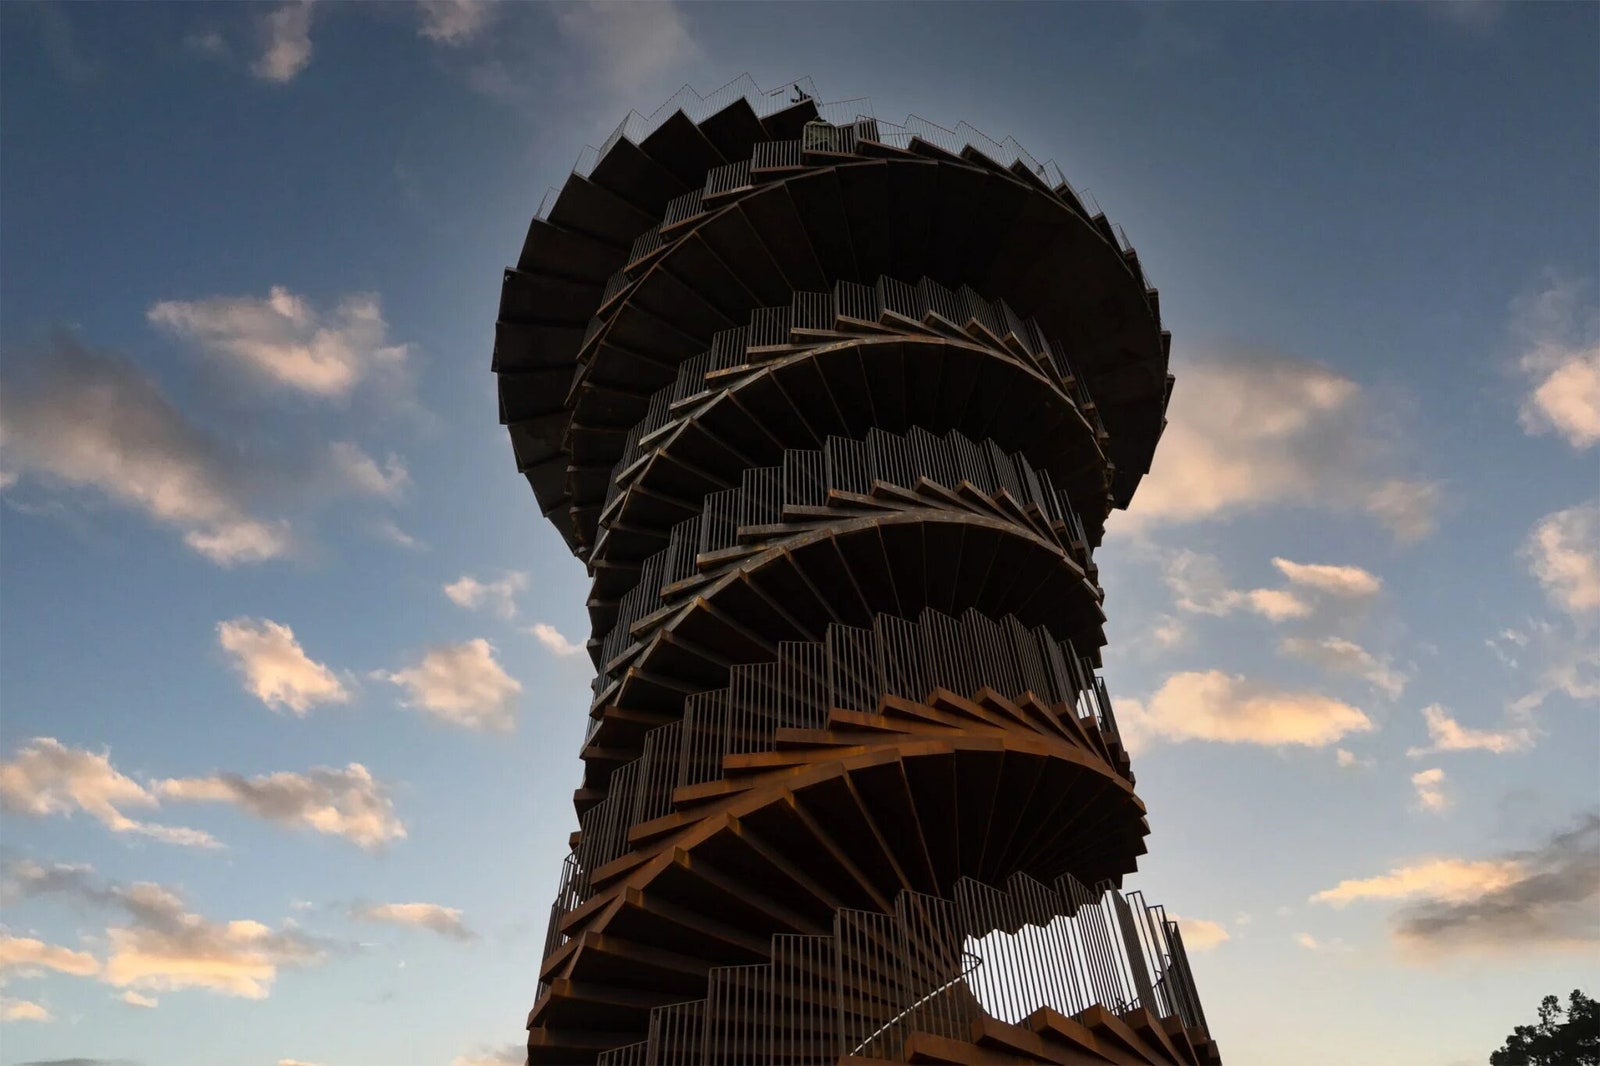 Marsk Tower новая смотровая башня по проекту BIG в Дании